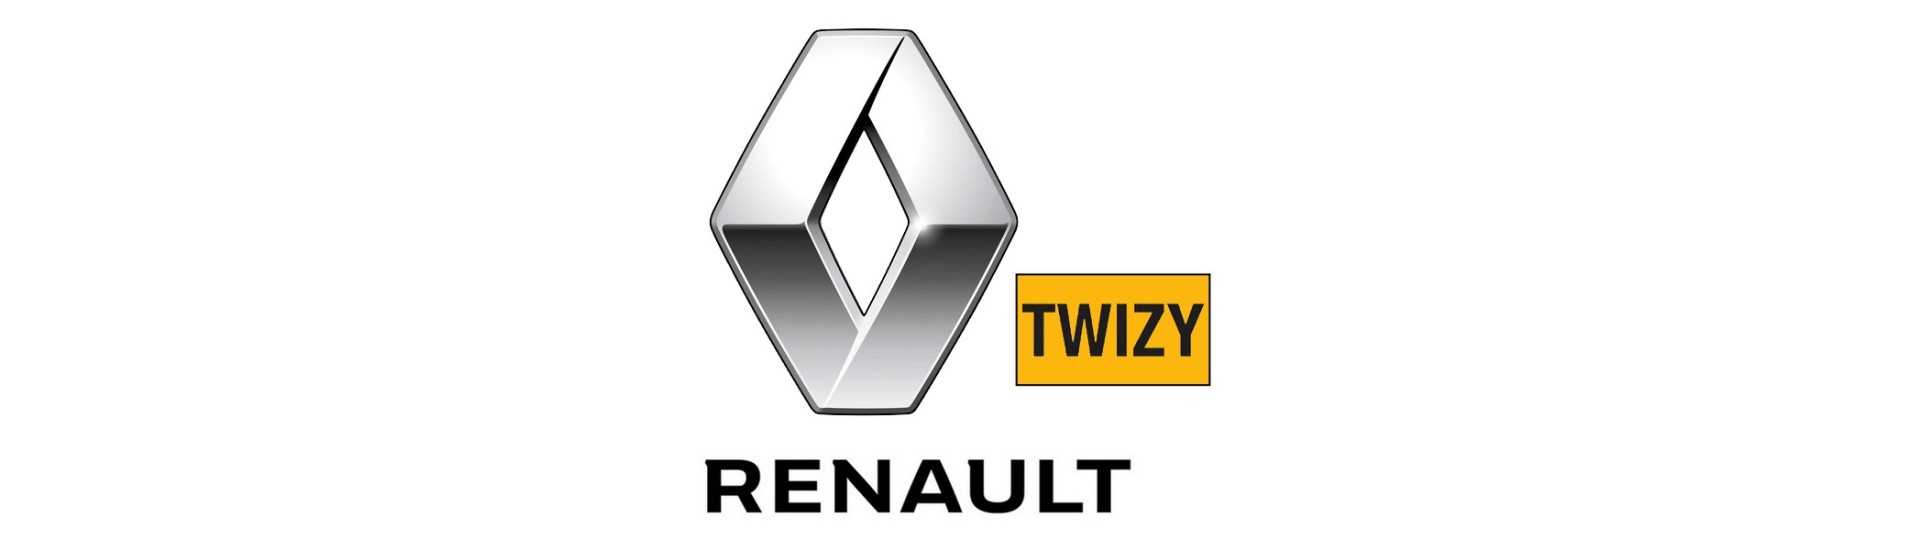 Hayon glas till bästa pris för bil utan tillstånd Renault Twizy